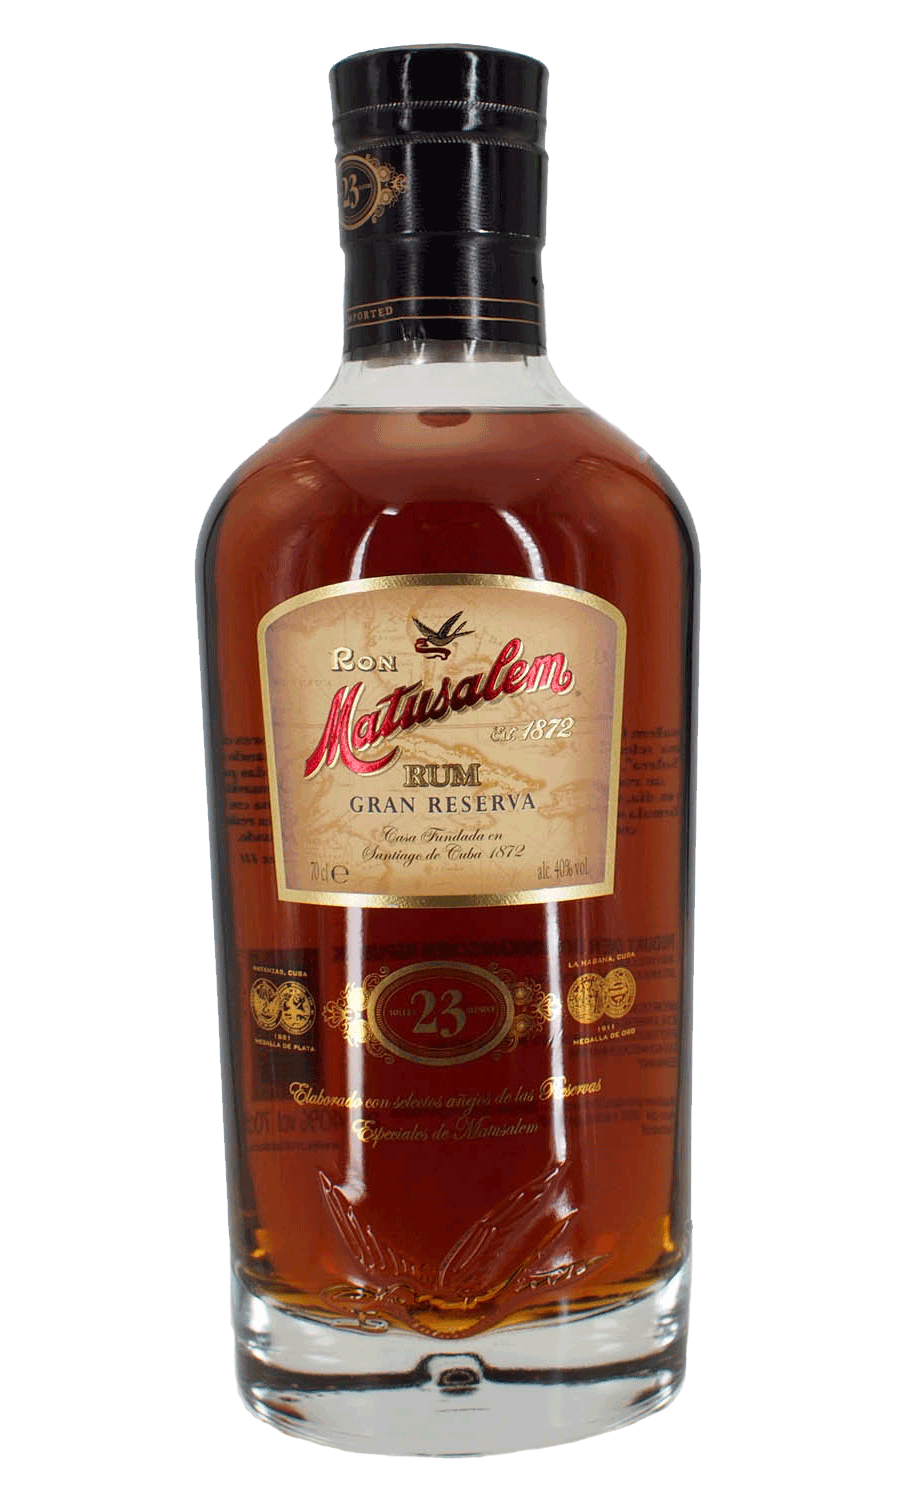 Matusalem Rum 23 Jahre Gran Reserva